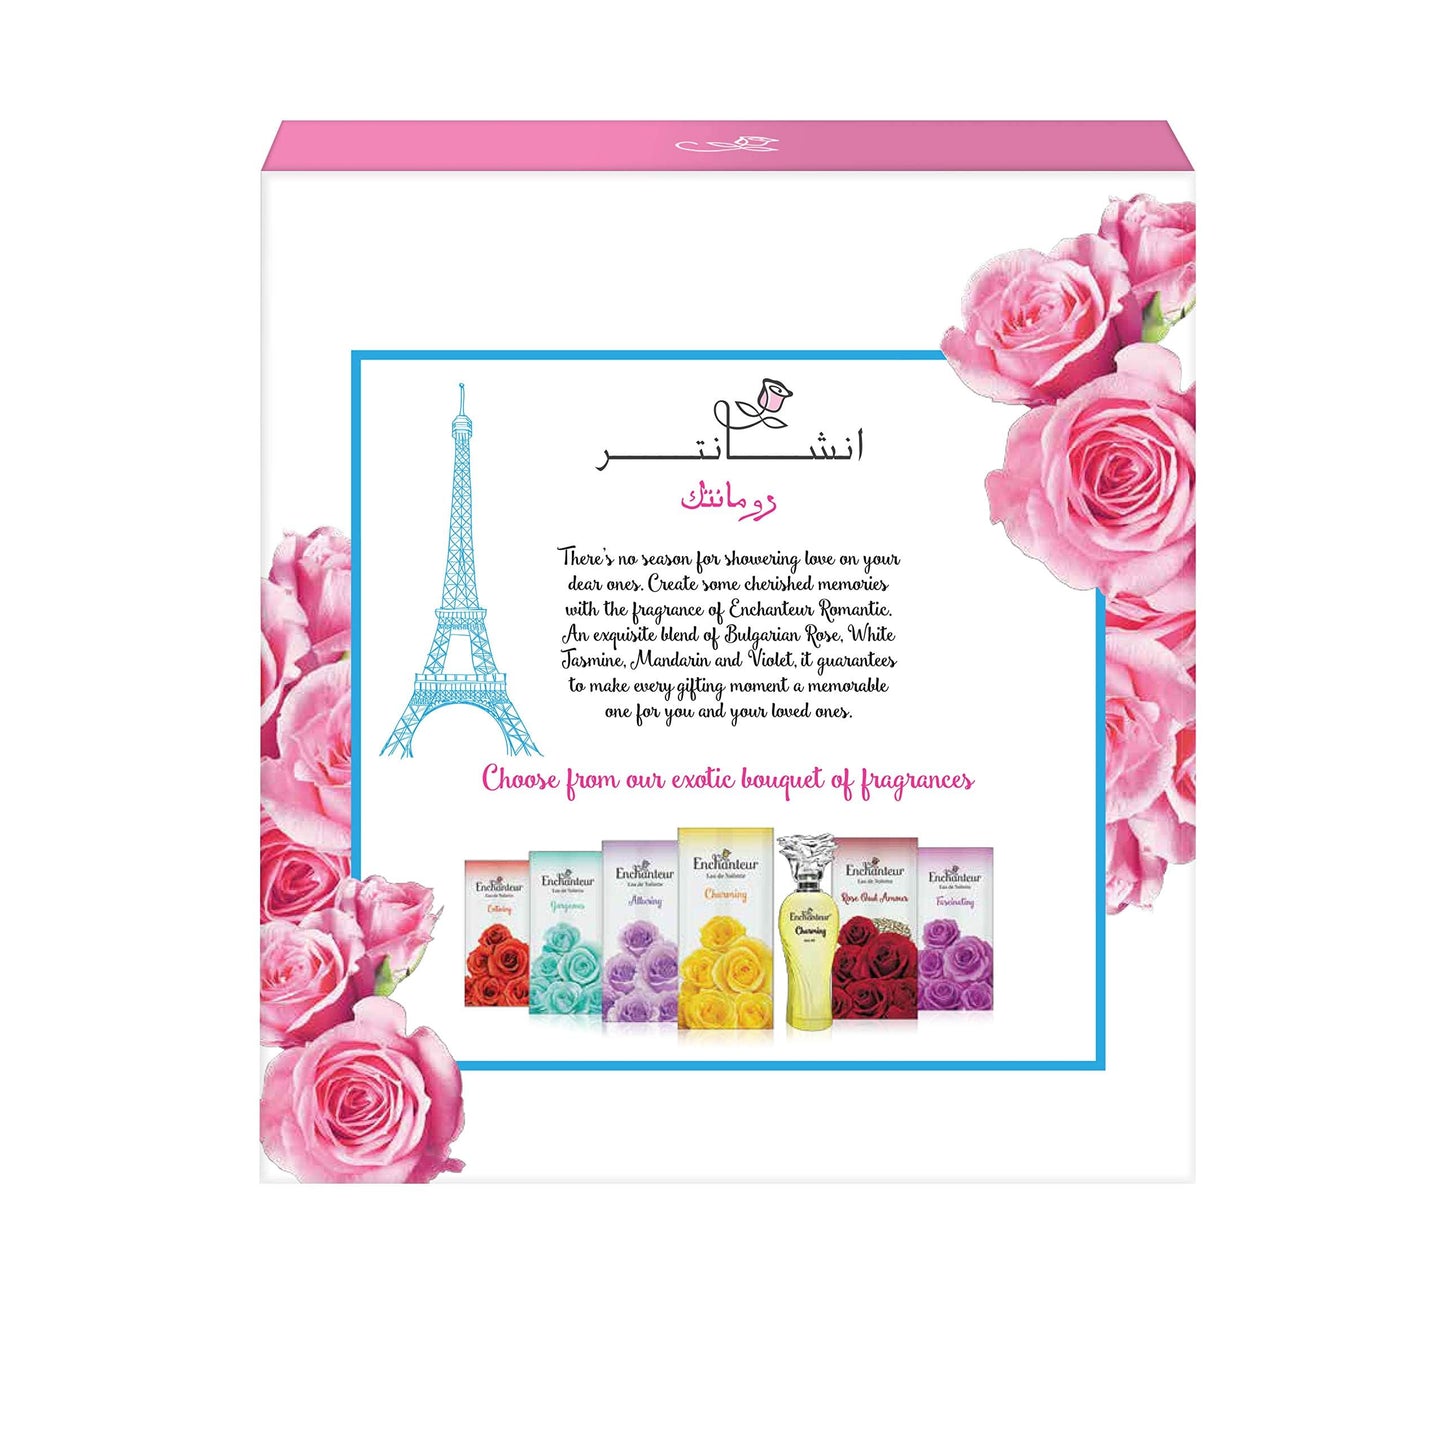 Enchanteur EDT & Perfumed Deodorant Giftpack- Romantic, Gift Of Love, 175 ml